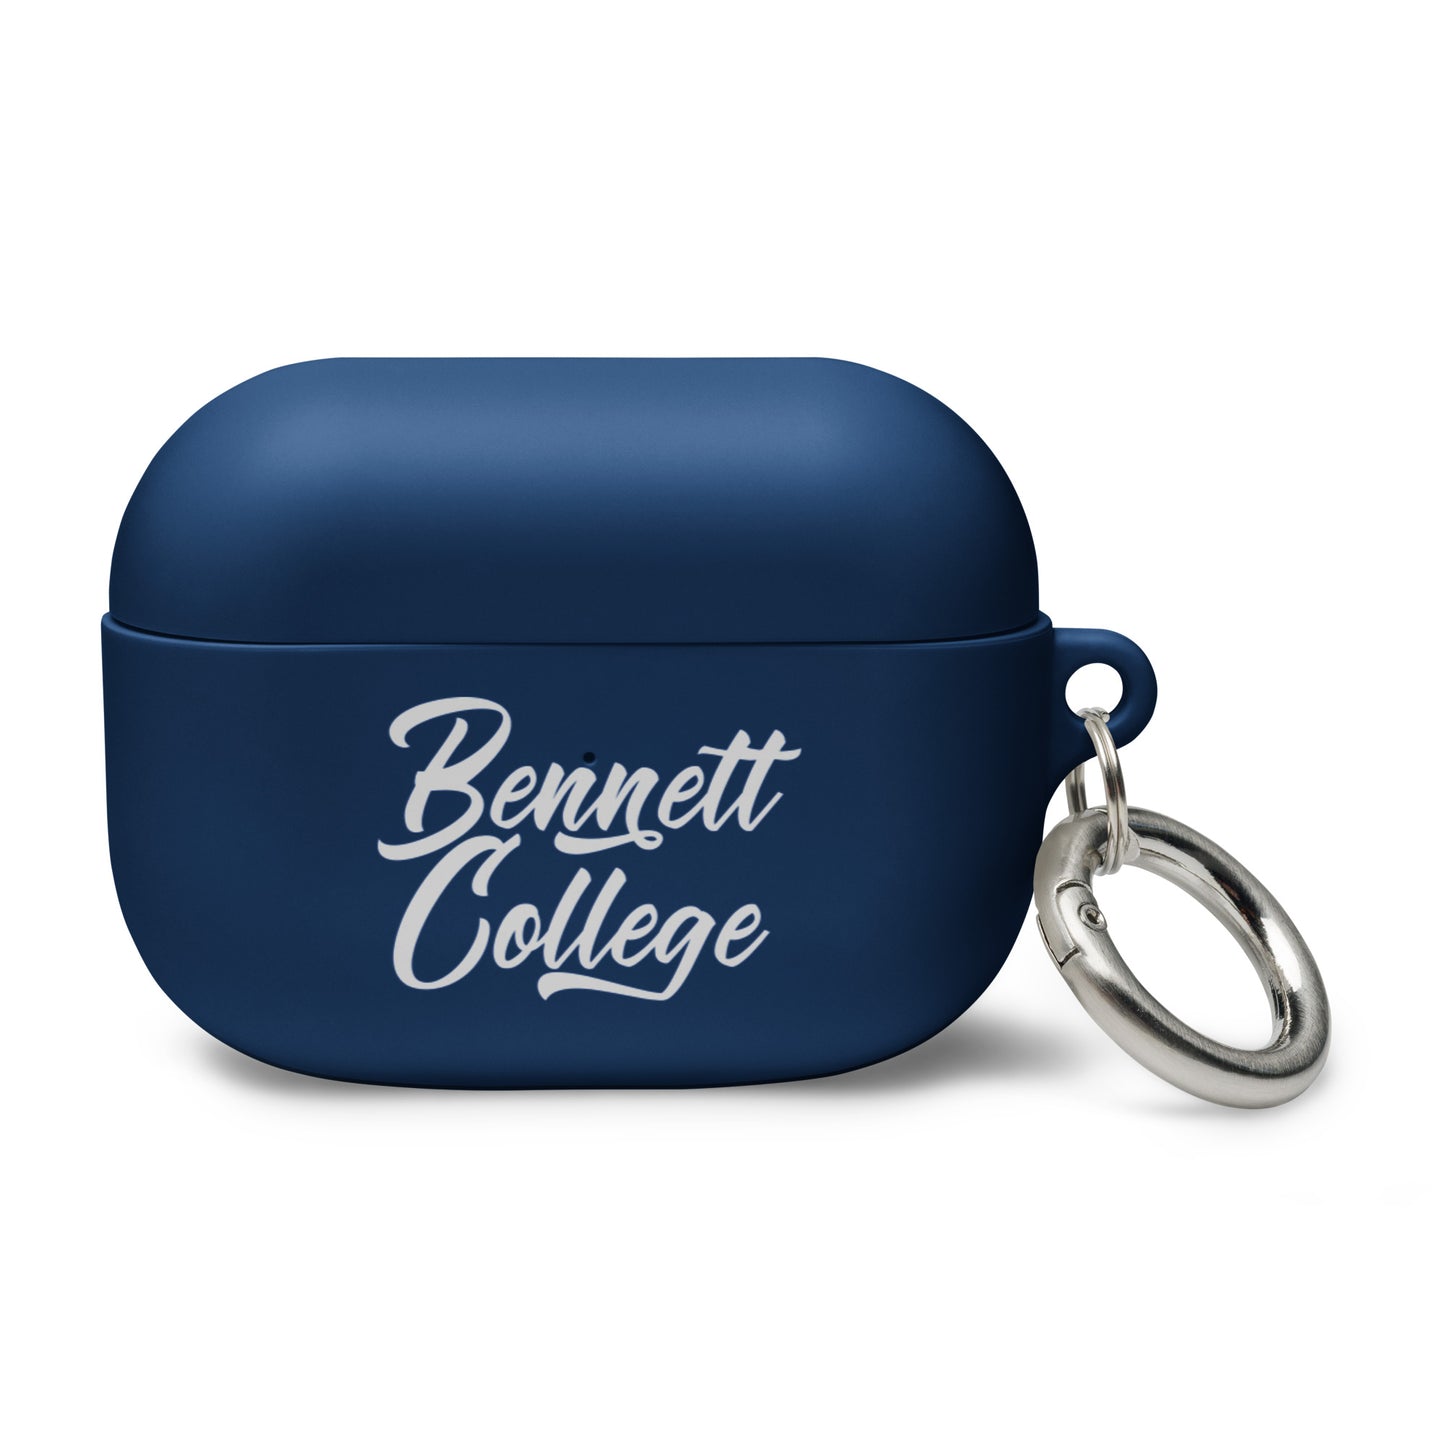 Bennett College AirPods case